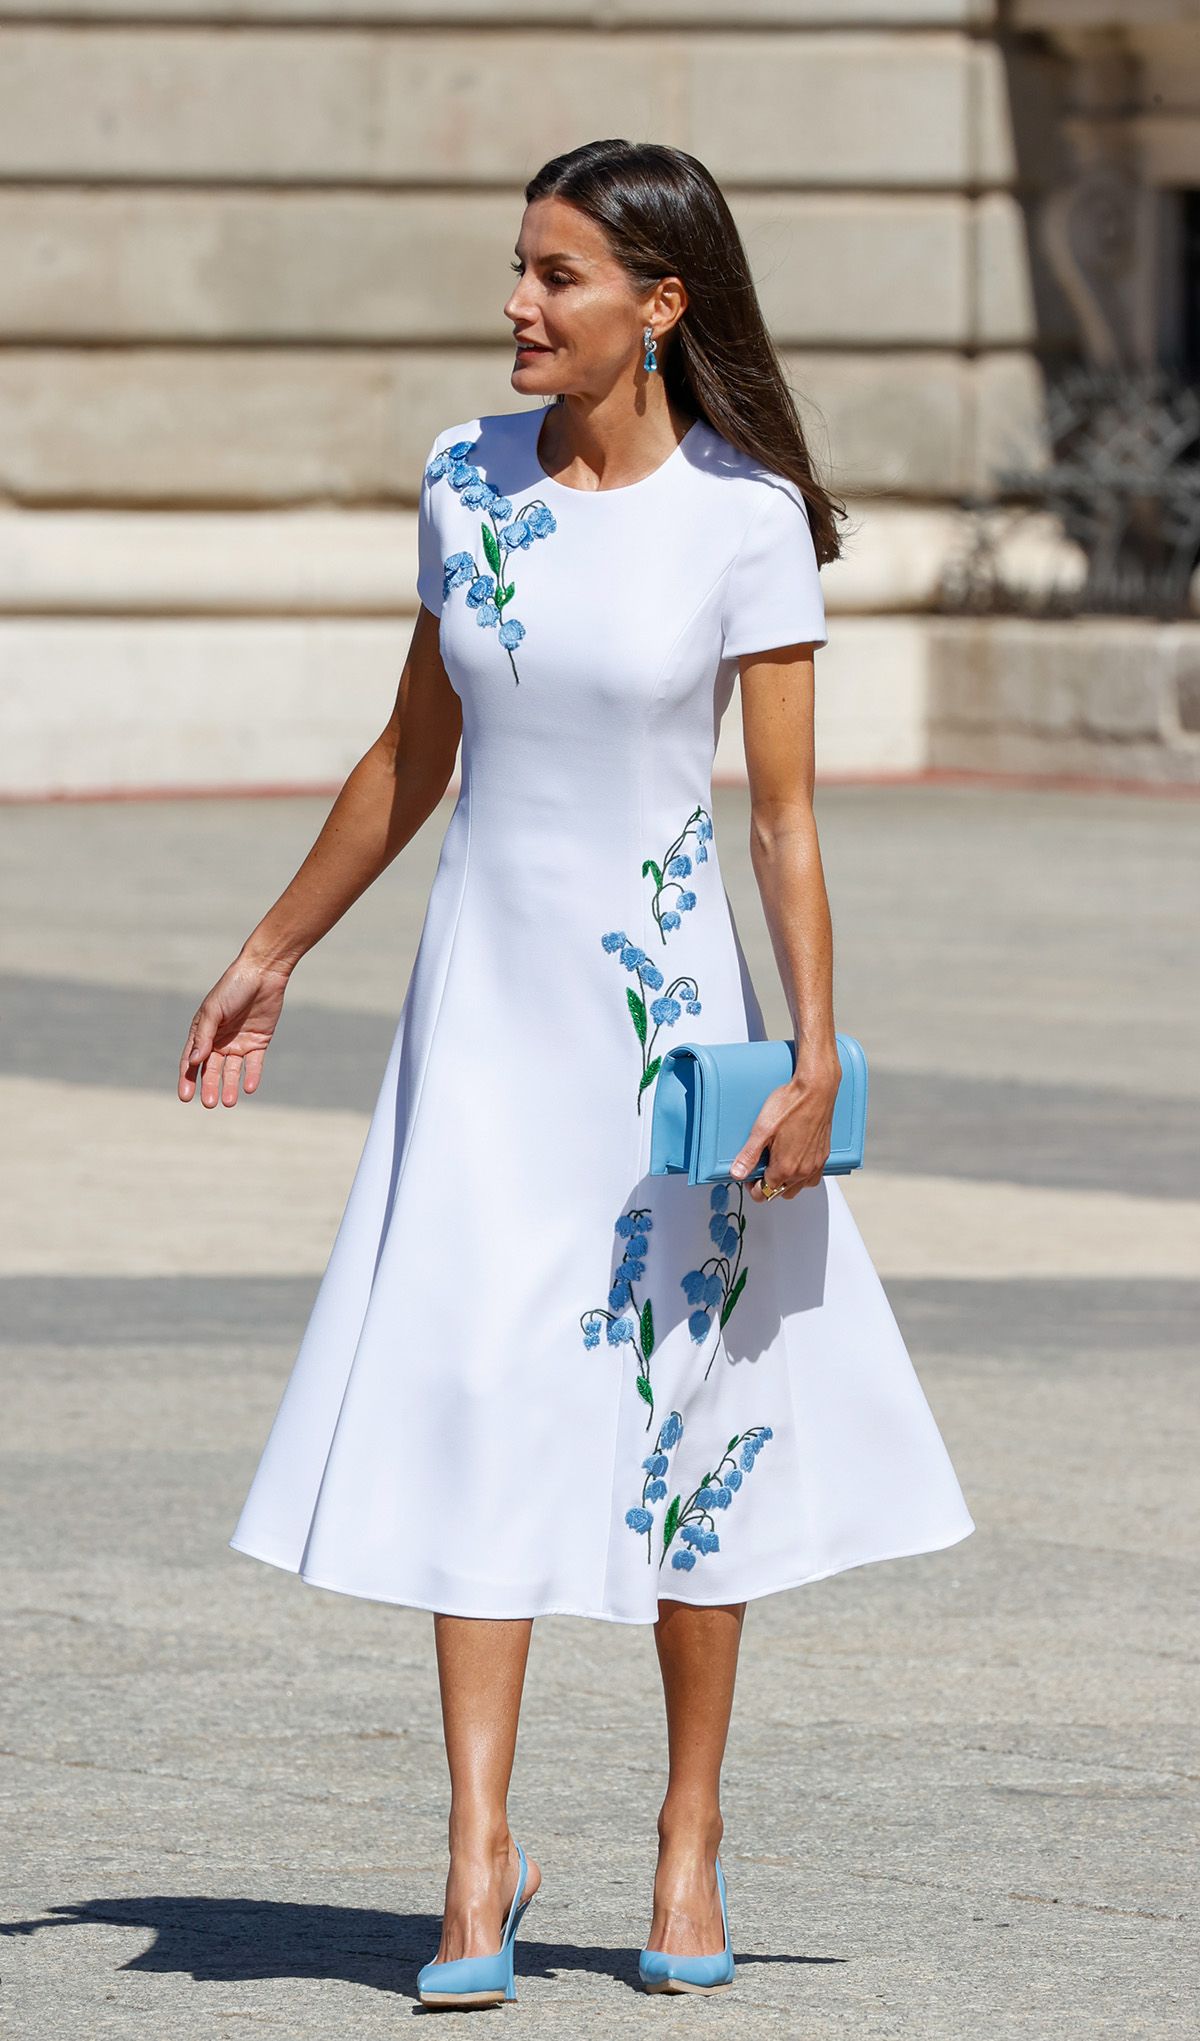 La reina Letizia: con nuevo vestido blanco de flores azules